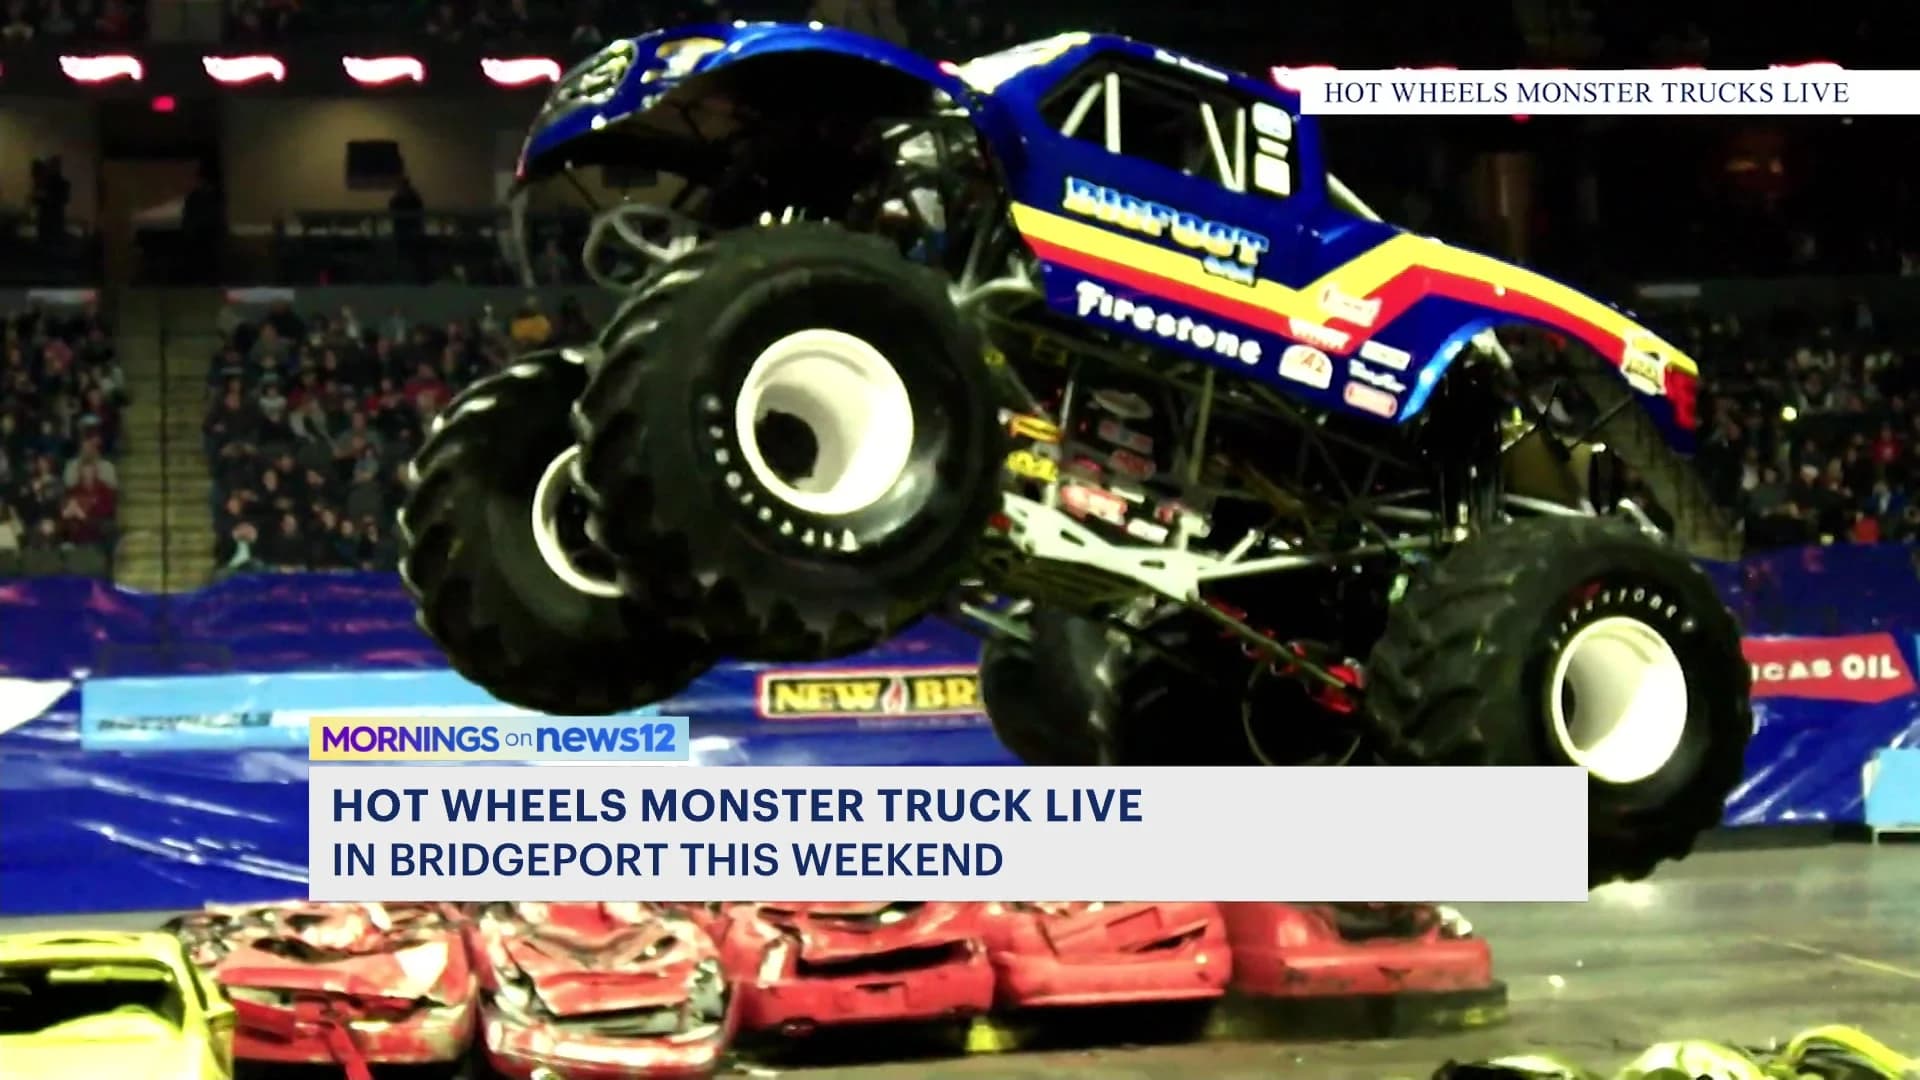 Hot Wheels Monster Truck event revs up in Bridgeport this weekend